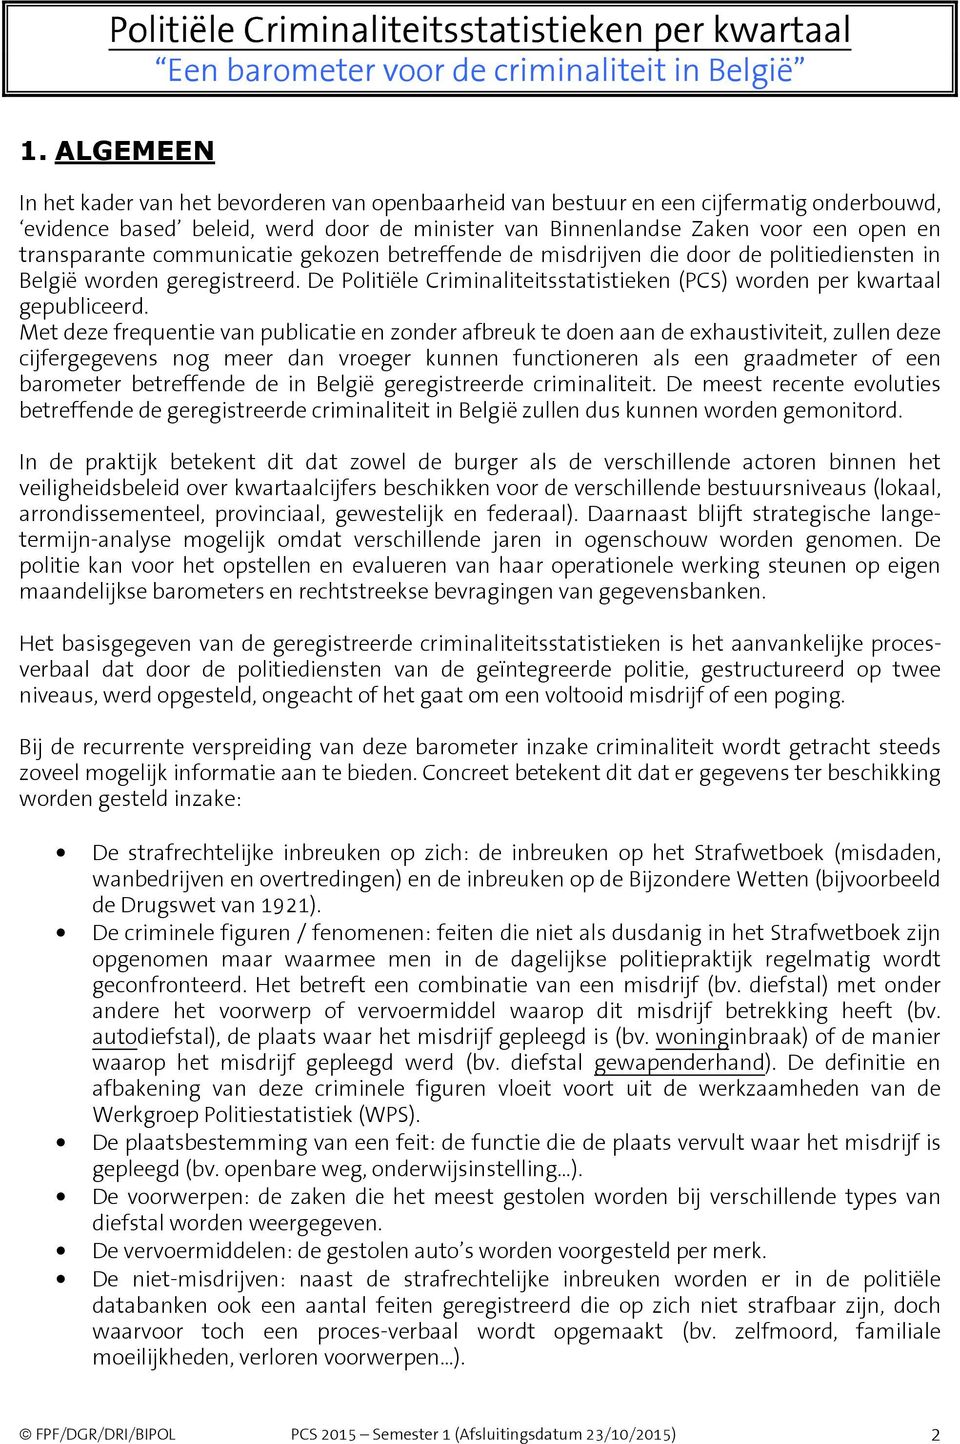 communicatie gekozen betreffende de misdrijven die door de politiediensten in België worden geregistreerd. De Politiële Criminaliteitsstatistieken (PCS) worden per kwartaal gepubliceerd.